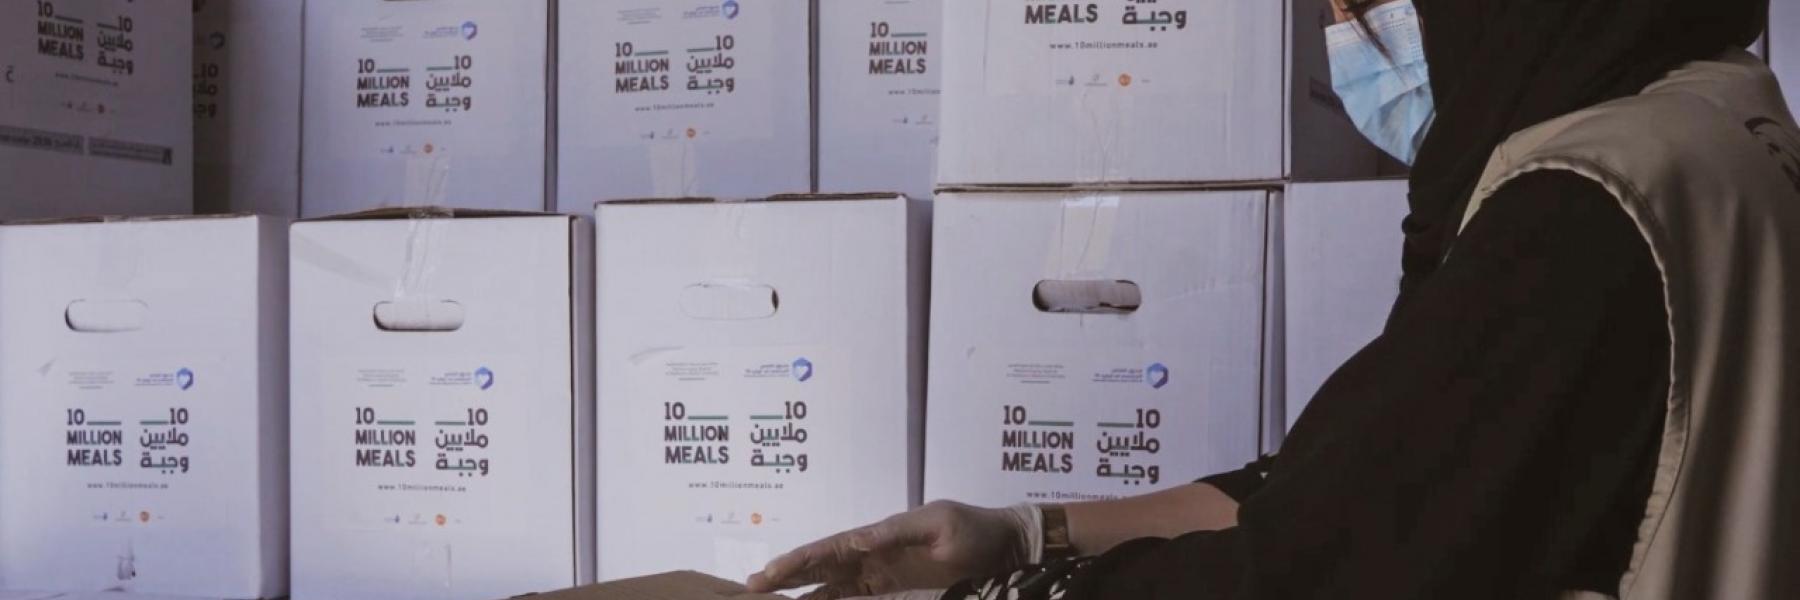 الإمارات تطلق حملة "100 مليون وجبة"